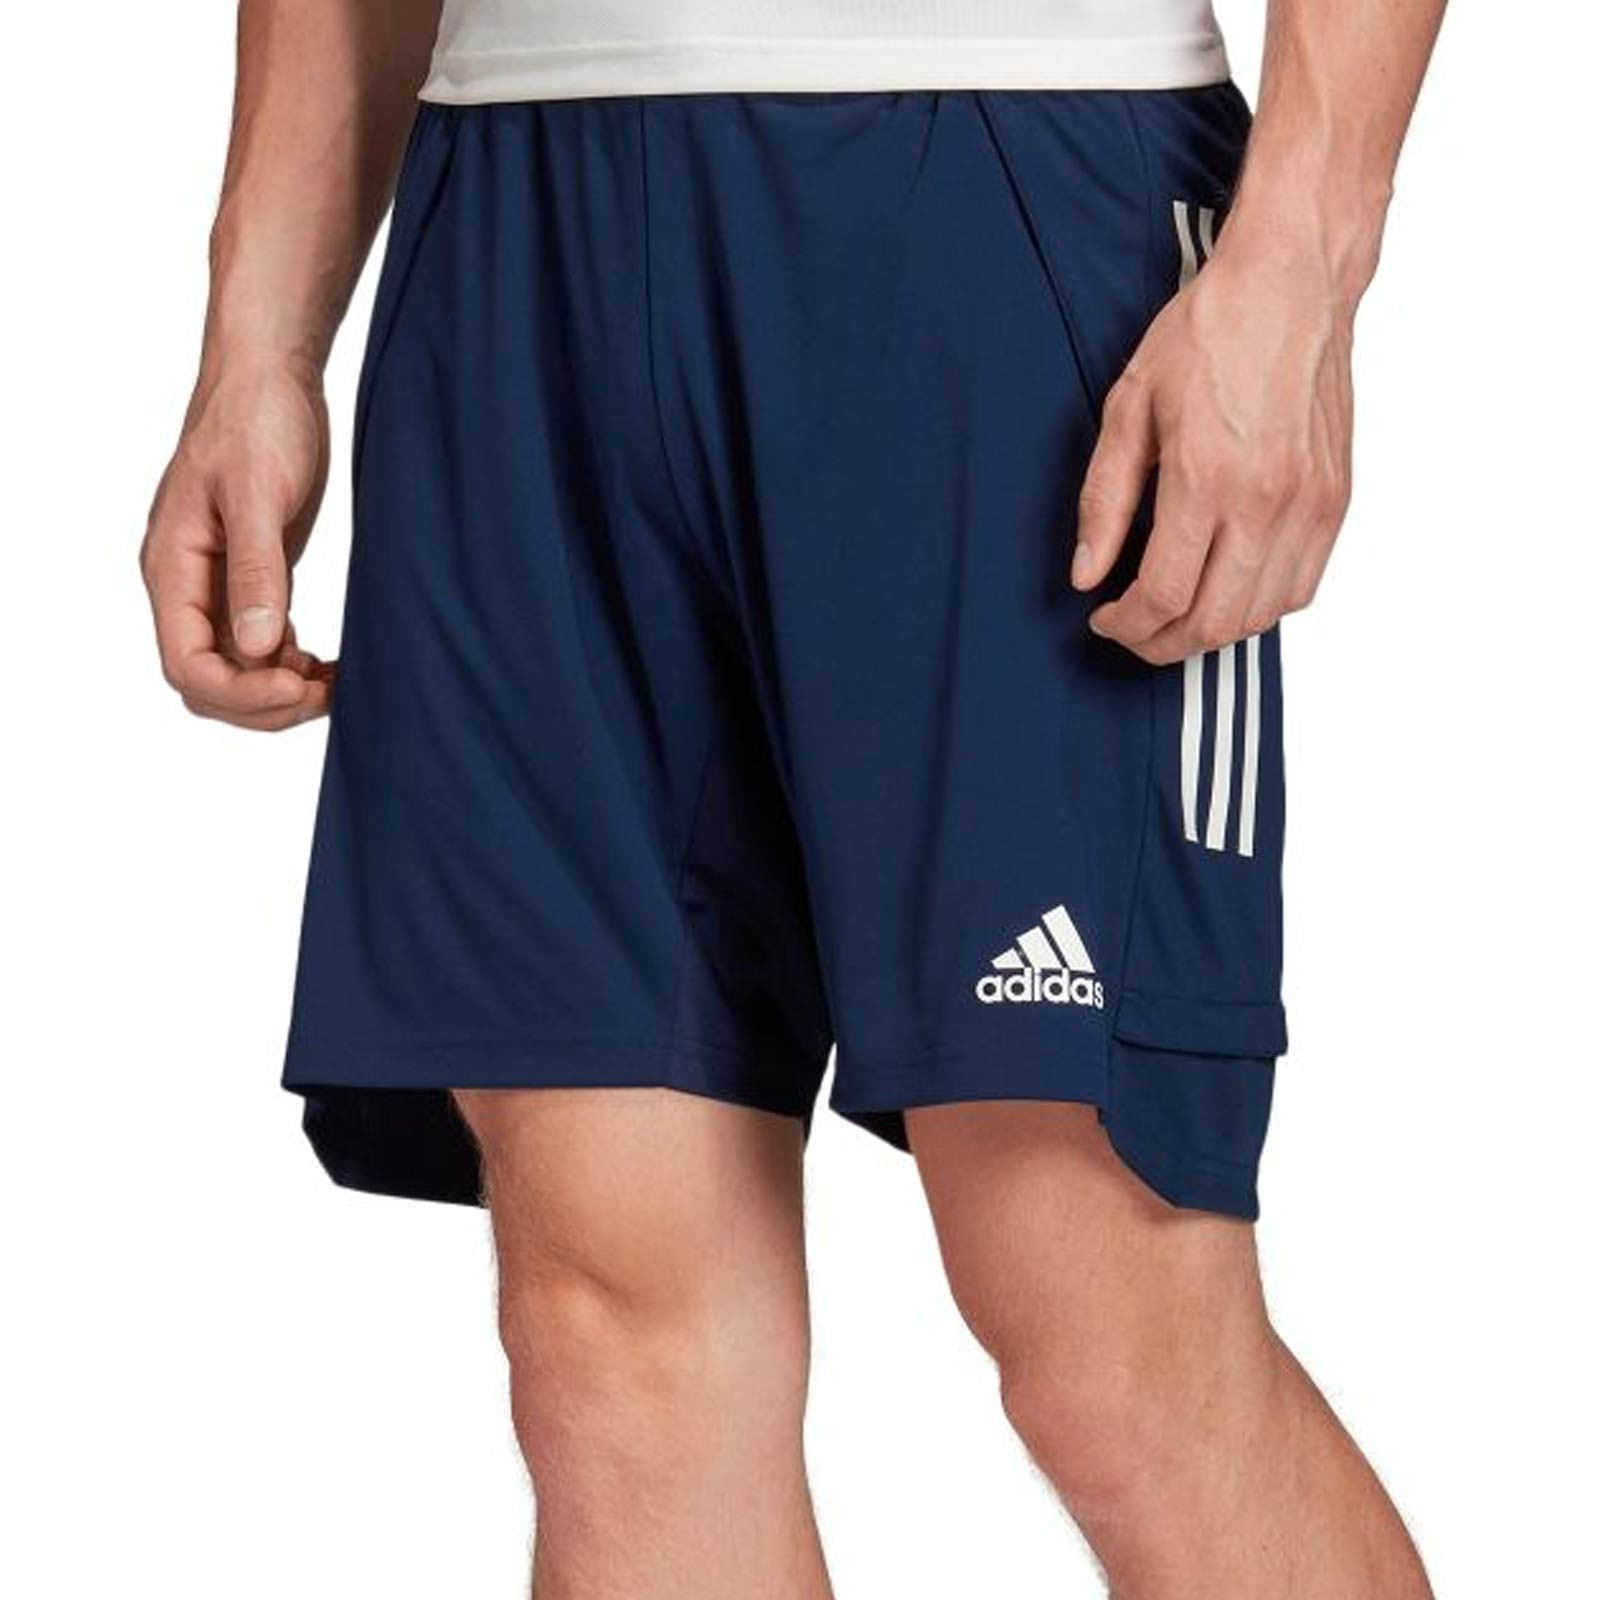 Hombre Ropa de Pantalones cortos de Pantalones cortos informales Pantalón corto entrenamiento Manchester United Condivo 22 adidas de Tejido sintético de color Azul para hombre 